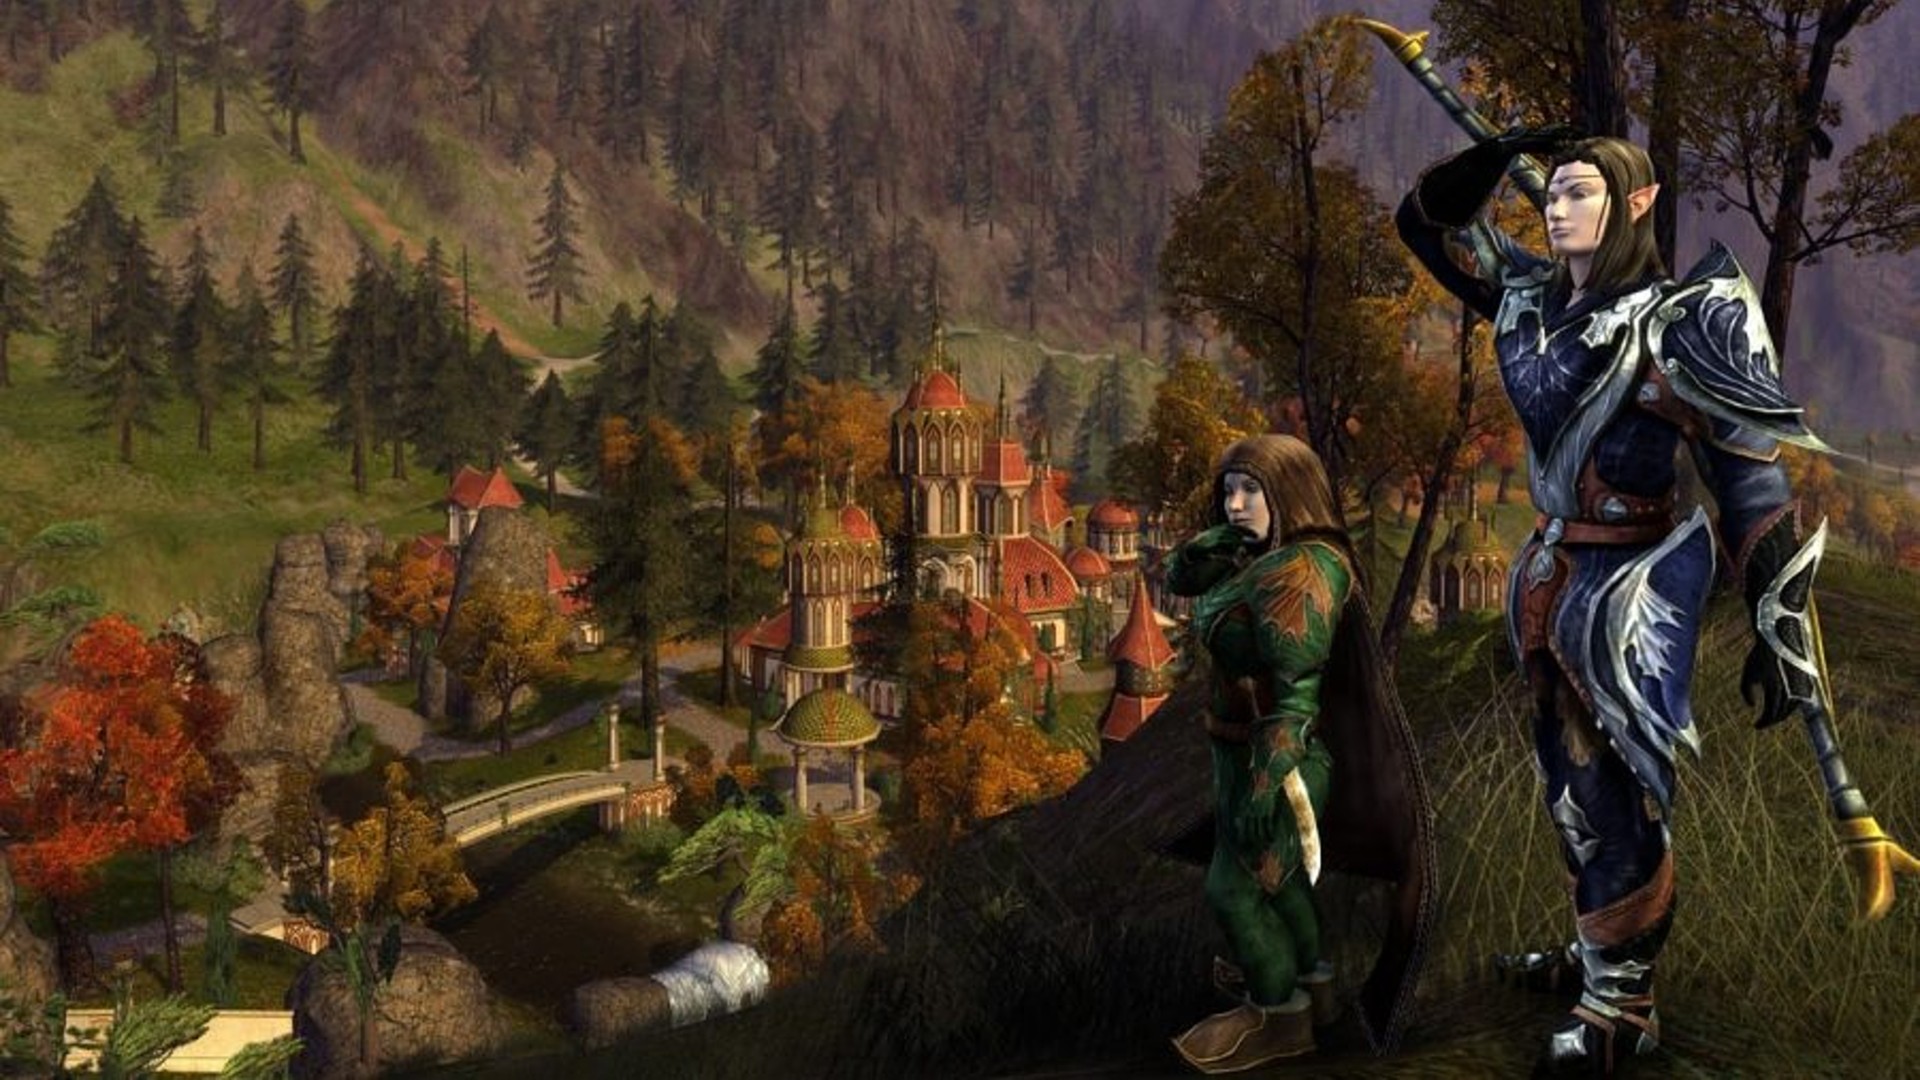 Los mejores juegos gratuitos para PC: El señor de los anillos en línea. La imagen muestra un duende y un hobbit parados en los árboles cerca de un pueblo.